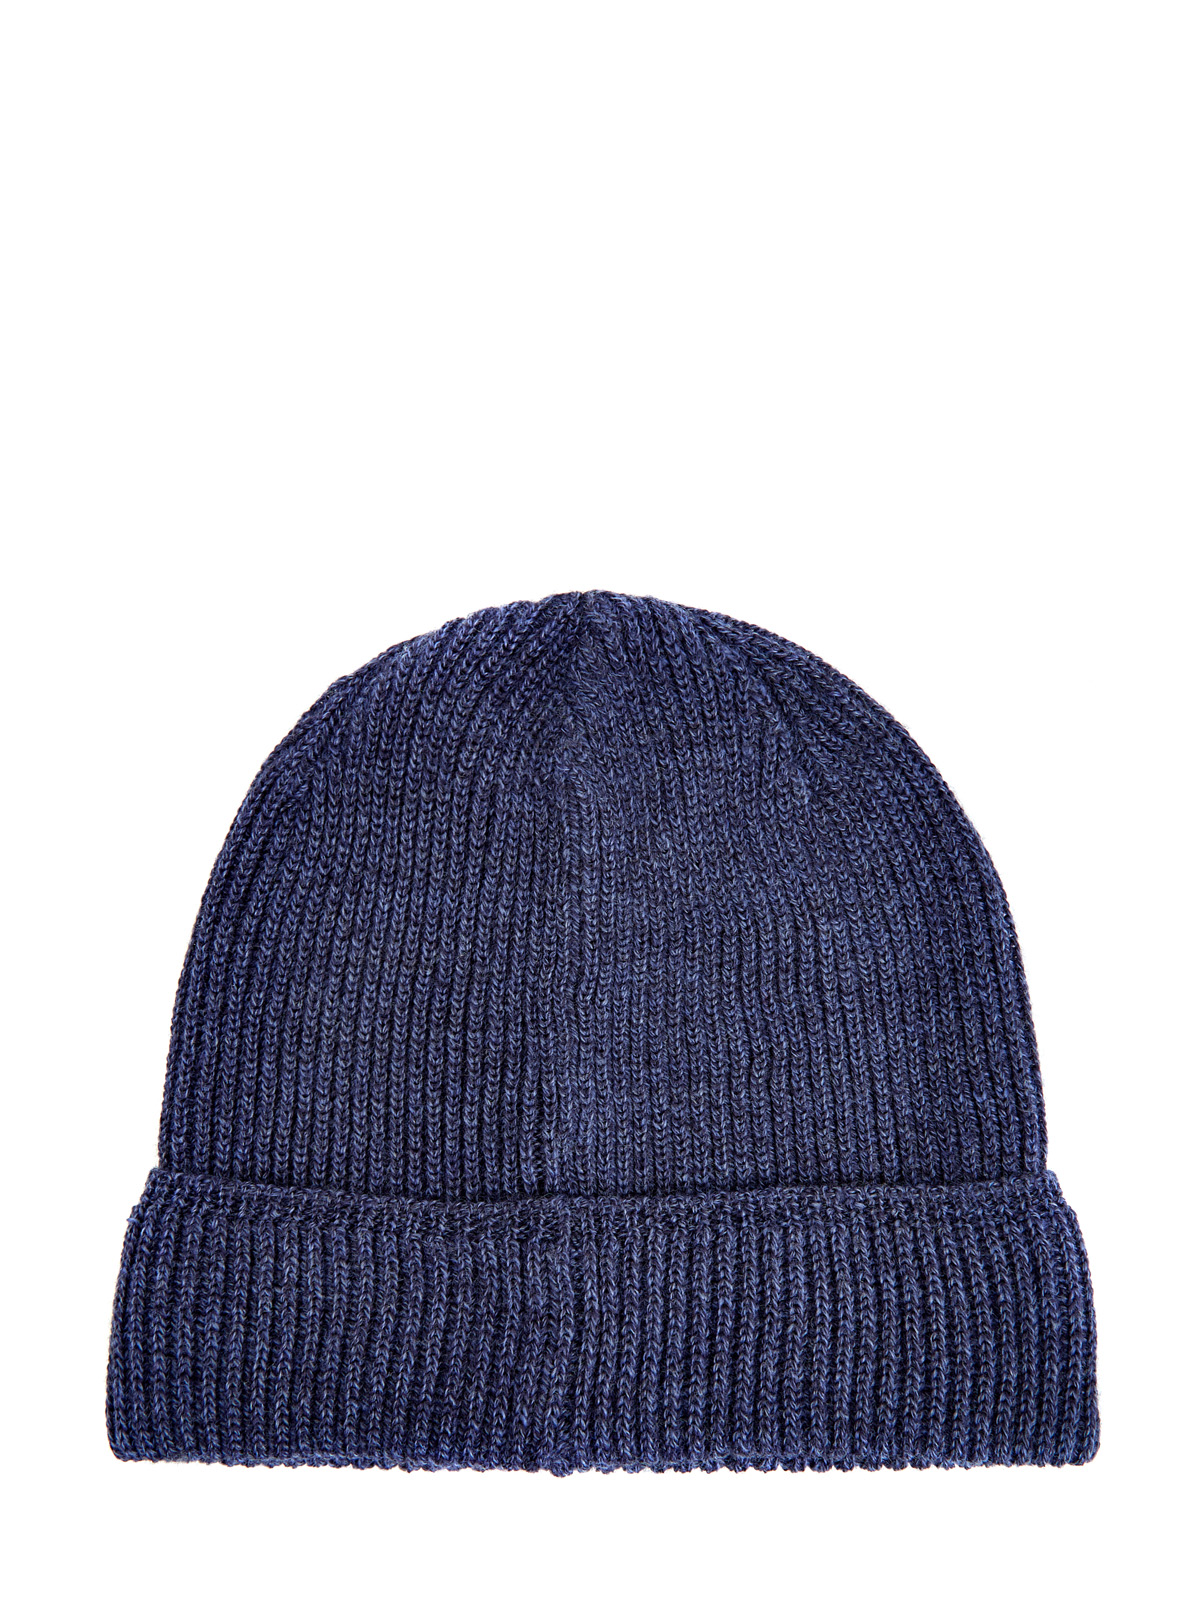 Шерстяная шапка с отворотом и нашивкой из кожи CANALI, цвет синий, размер 41;41.5;42;42.5;43;44 - фото 2